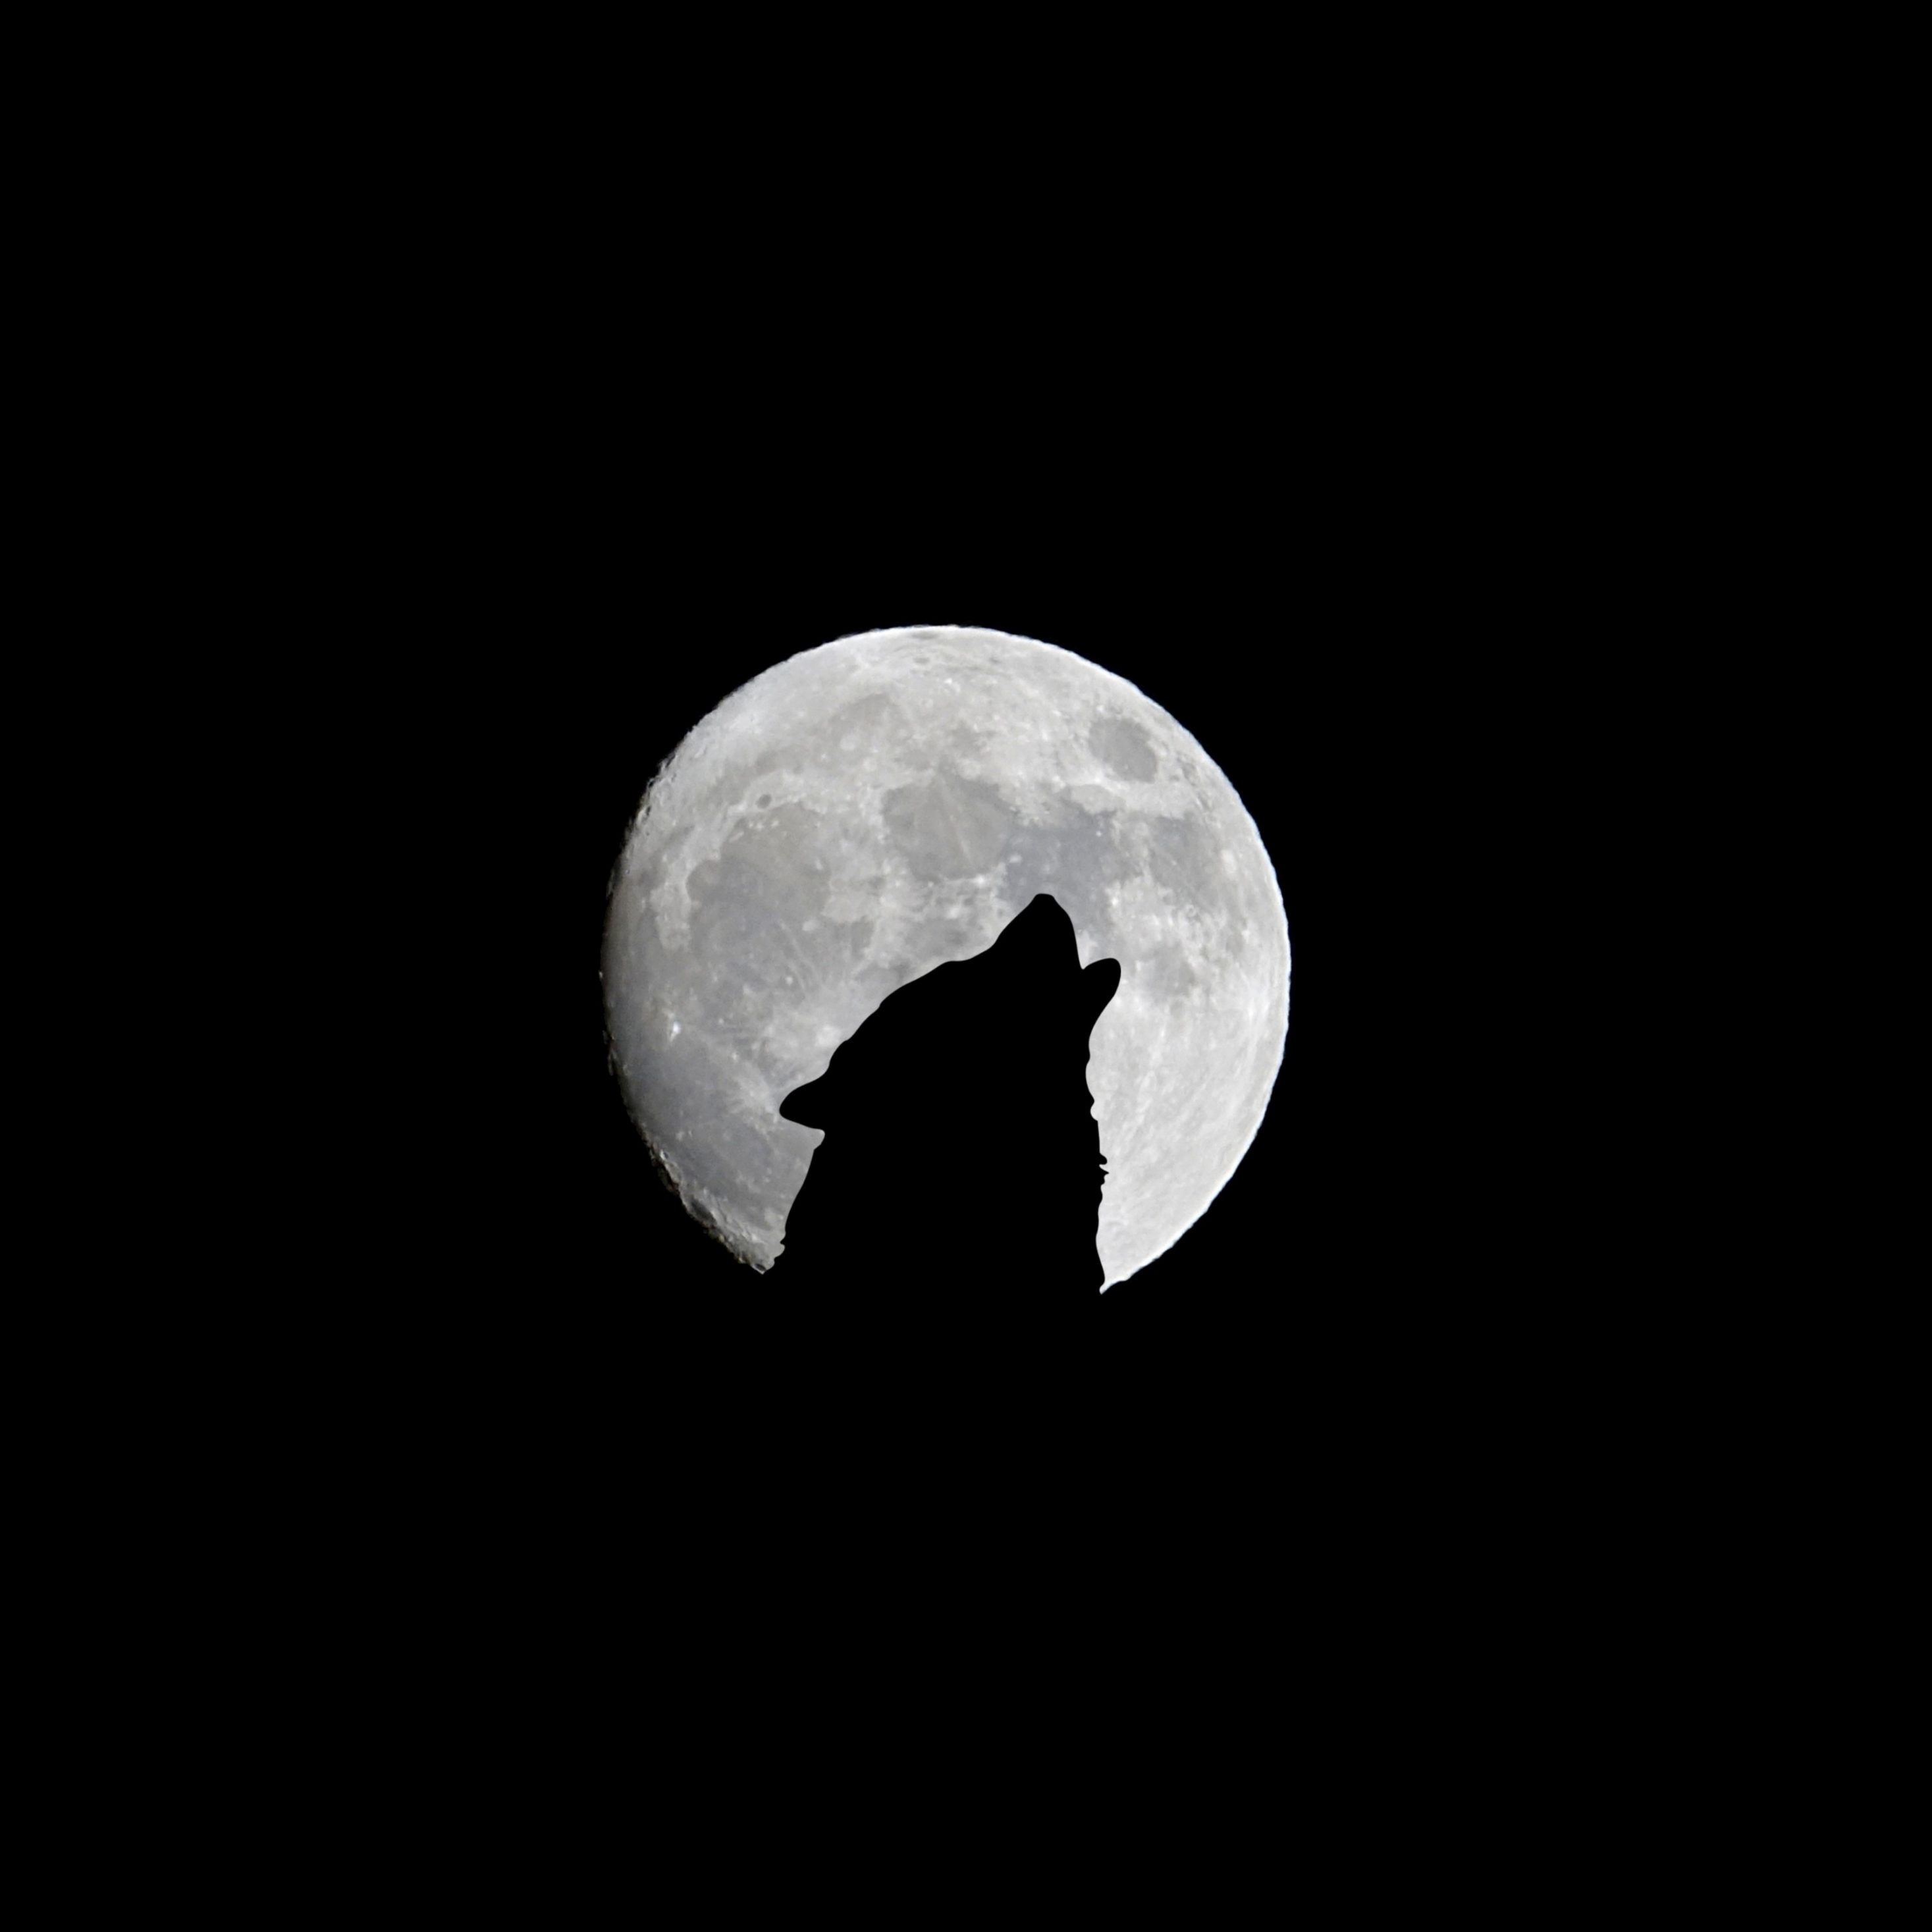 2934x2934 iOS iPad wallpaper 4k Silhouette of Wolf Full Moon Night Darkness iPad Wallpaper 2934x2934 pixels resolution